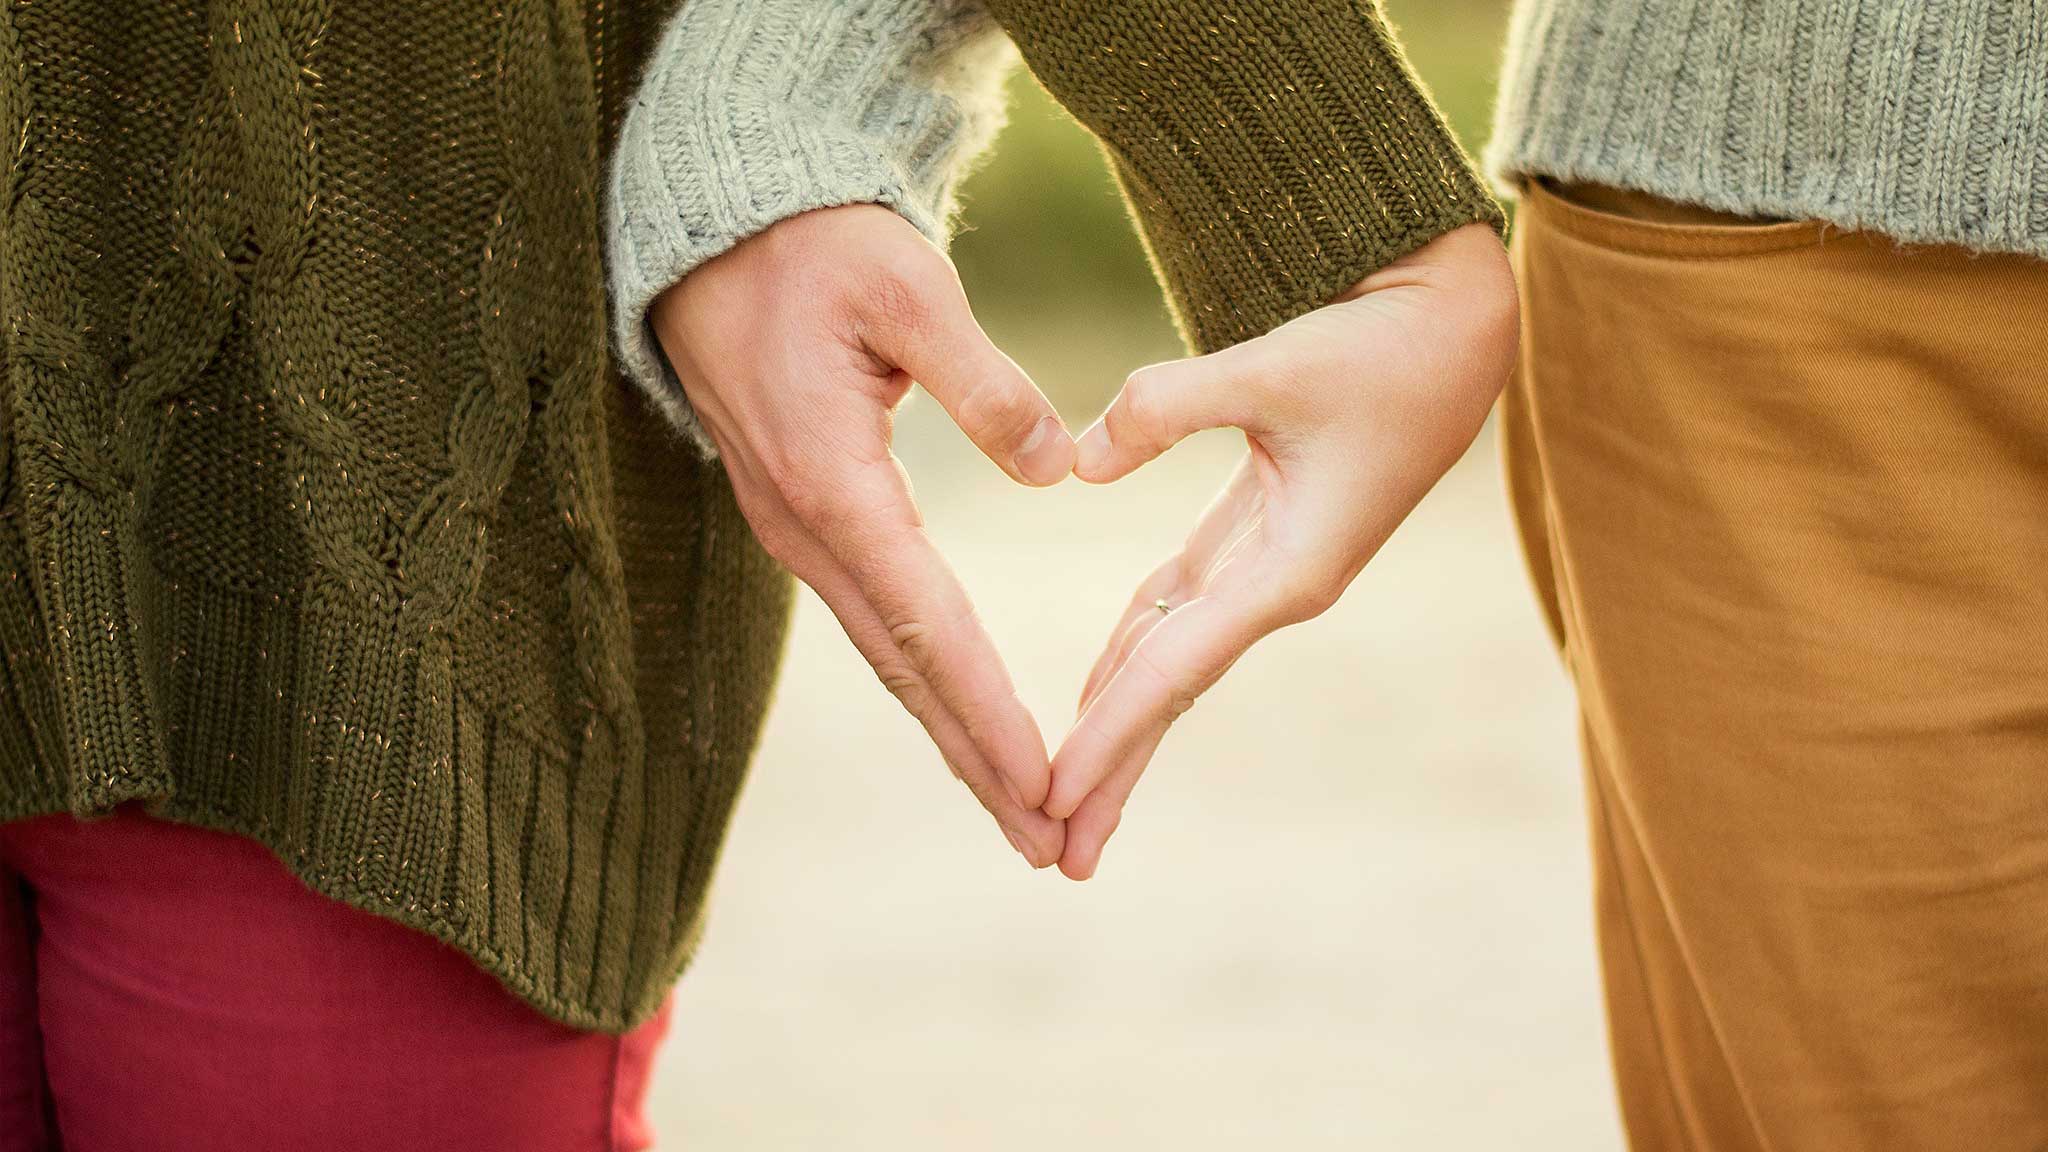 5 რამ, რასაც წარმატებული სასიყვარულო ურთიერთობა ჩიხში შეჰყავს და წარუმატებლად აქცევს